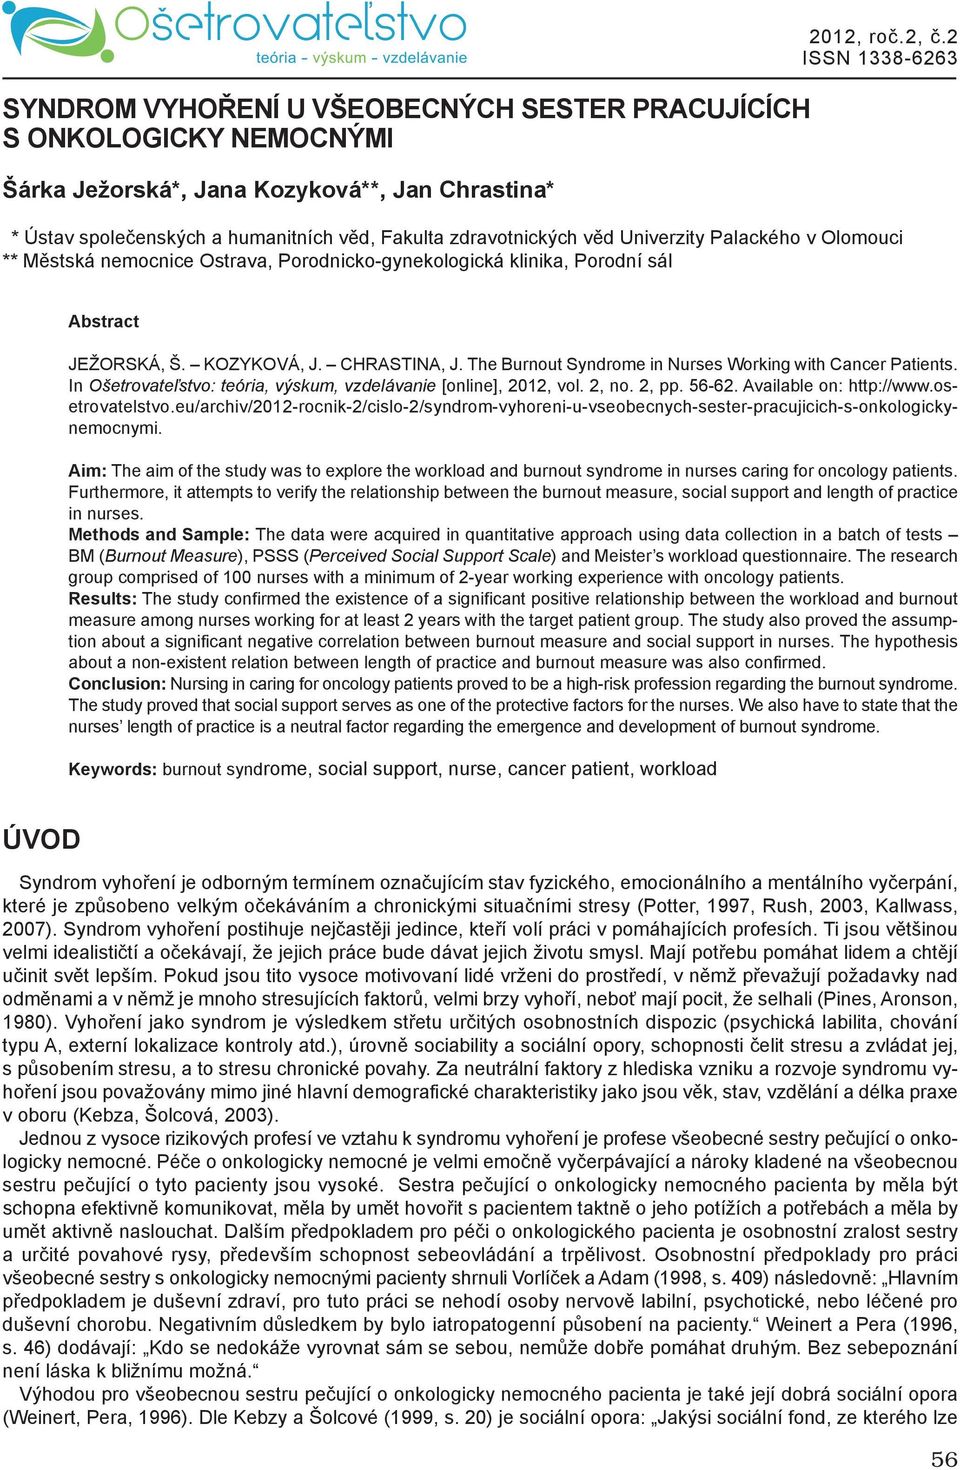 KOZYKOVÁ, J. CHRASTINA, J. The Burnout Syndrome in Nurses Working with Cancer Patients. In Ošetrovateľstvo: teória, výskum, vzdelávanie [online], 2012, vol. 2, no. 2, pp. 56-62.